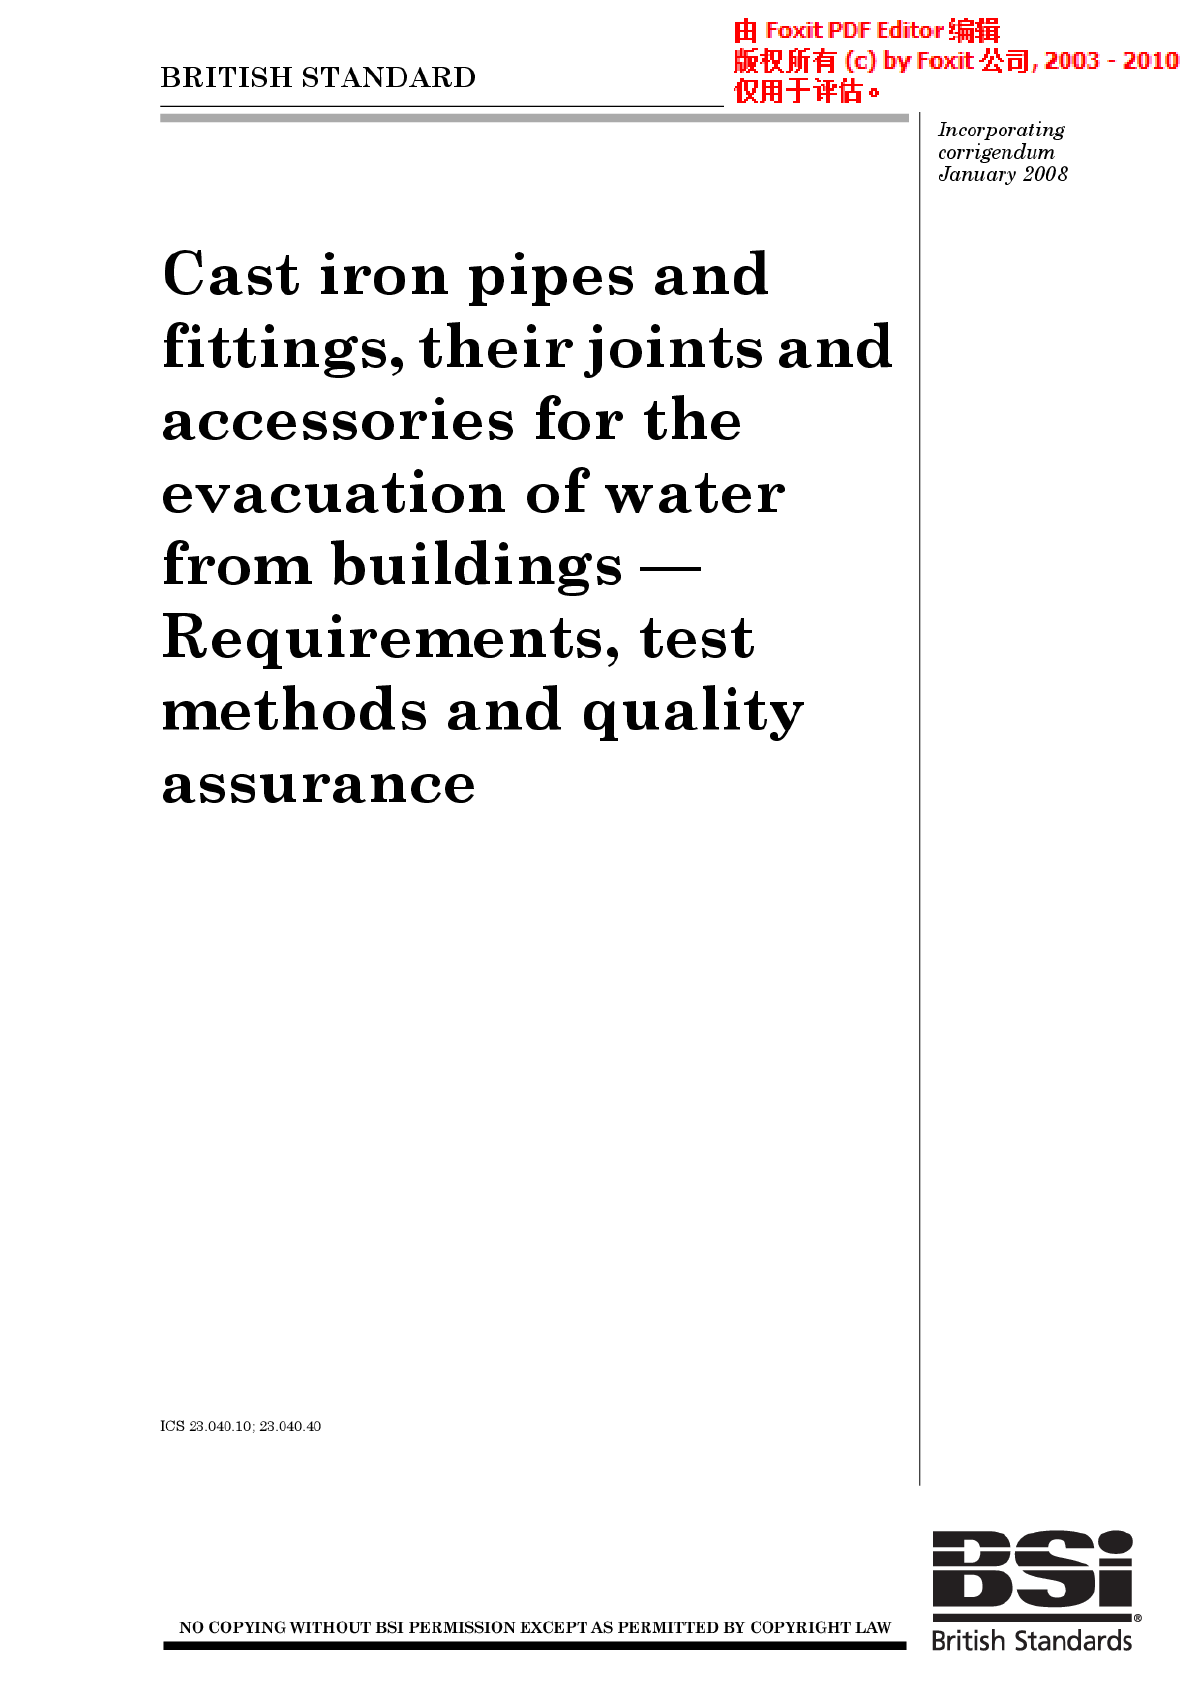  建筑物排水用铸铁管和配件及其接头和附件.要求、试验方法和质量保证